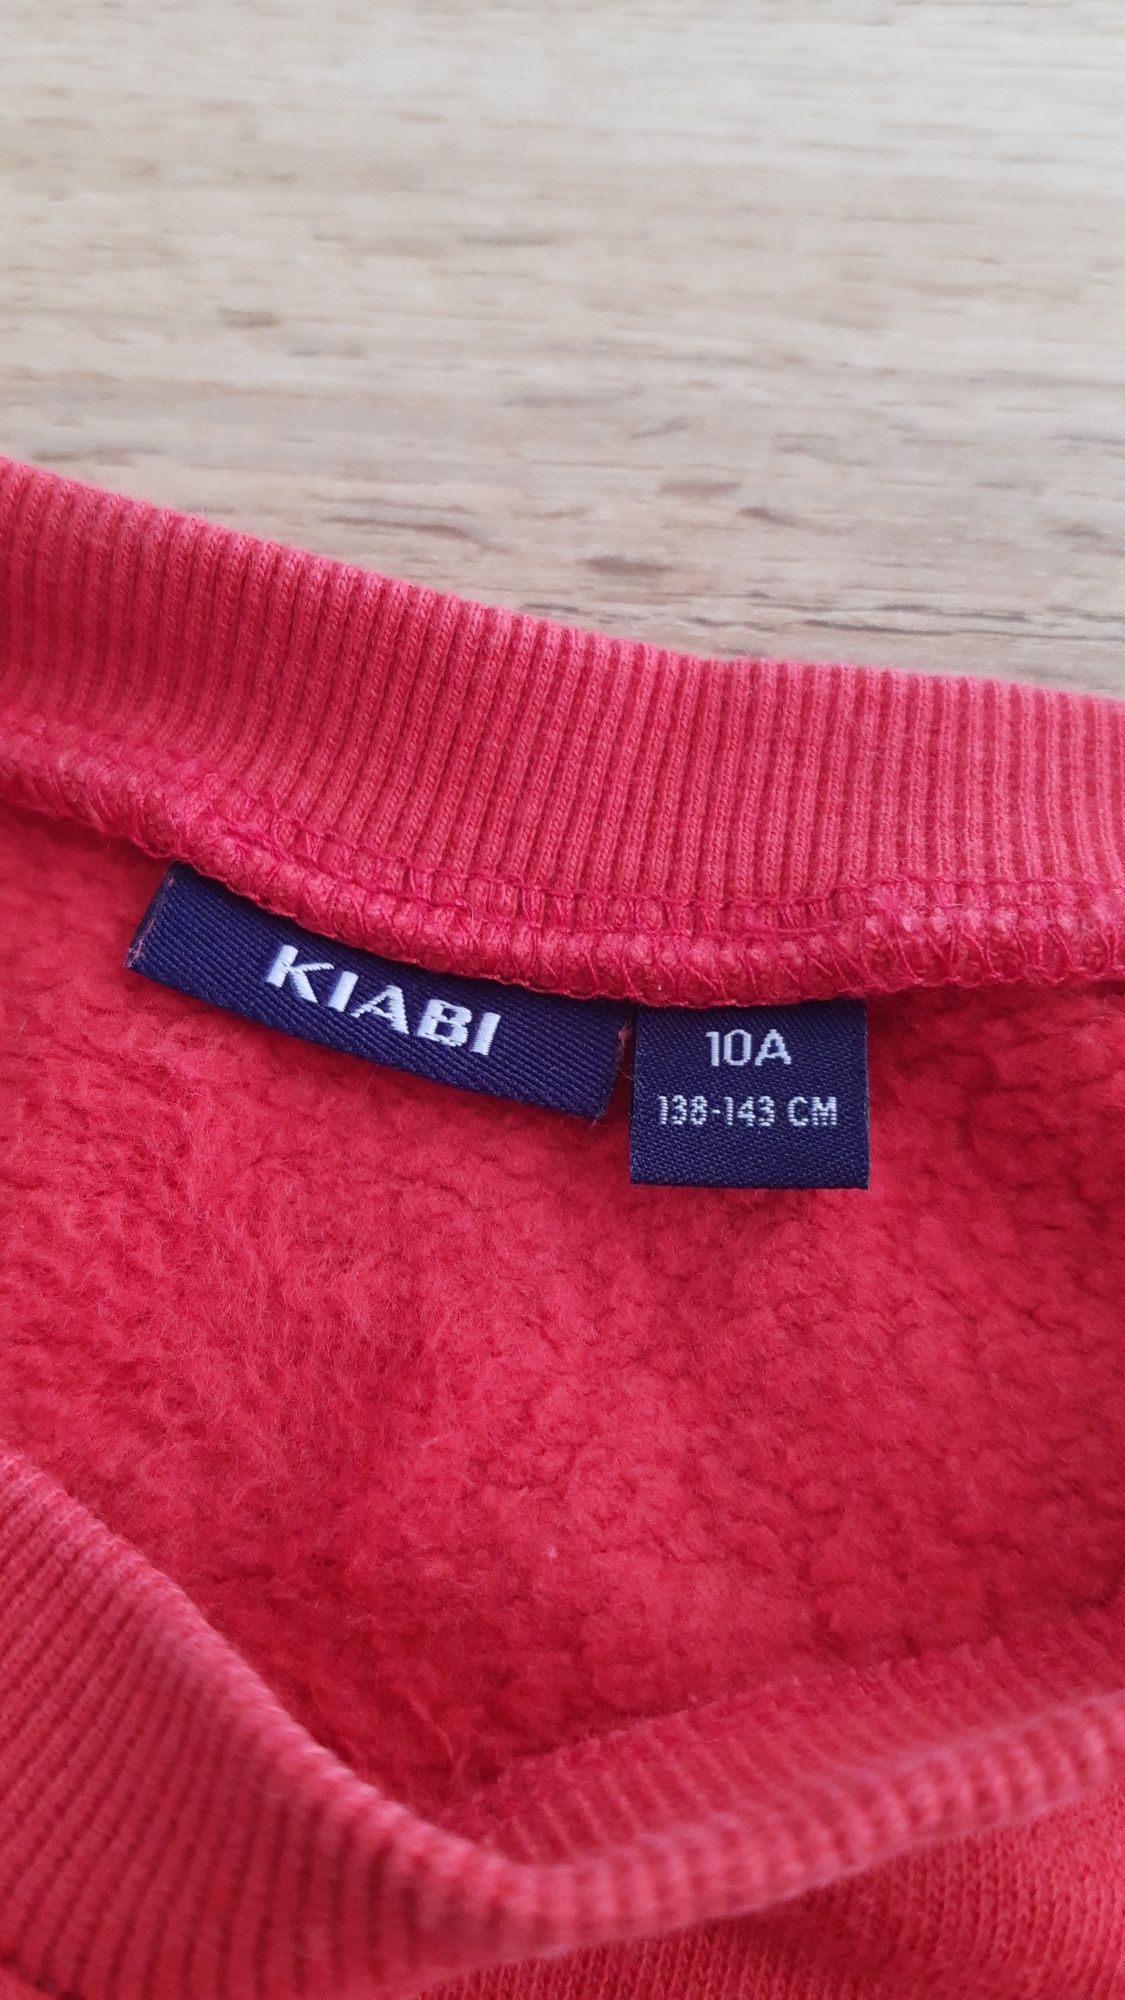 Bluza Kiabi rozmiar 138 143.